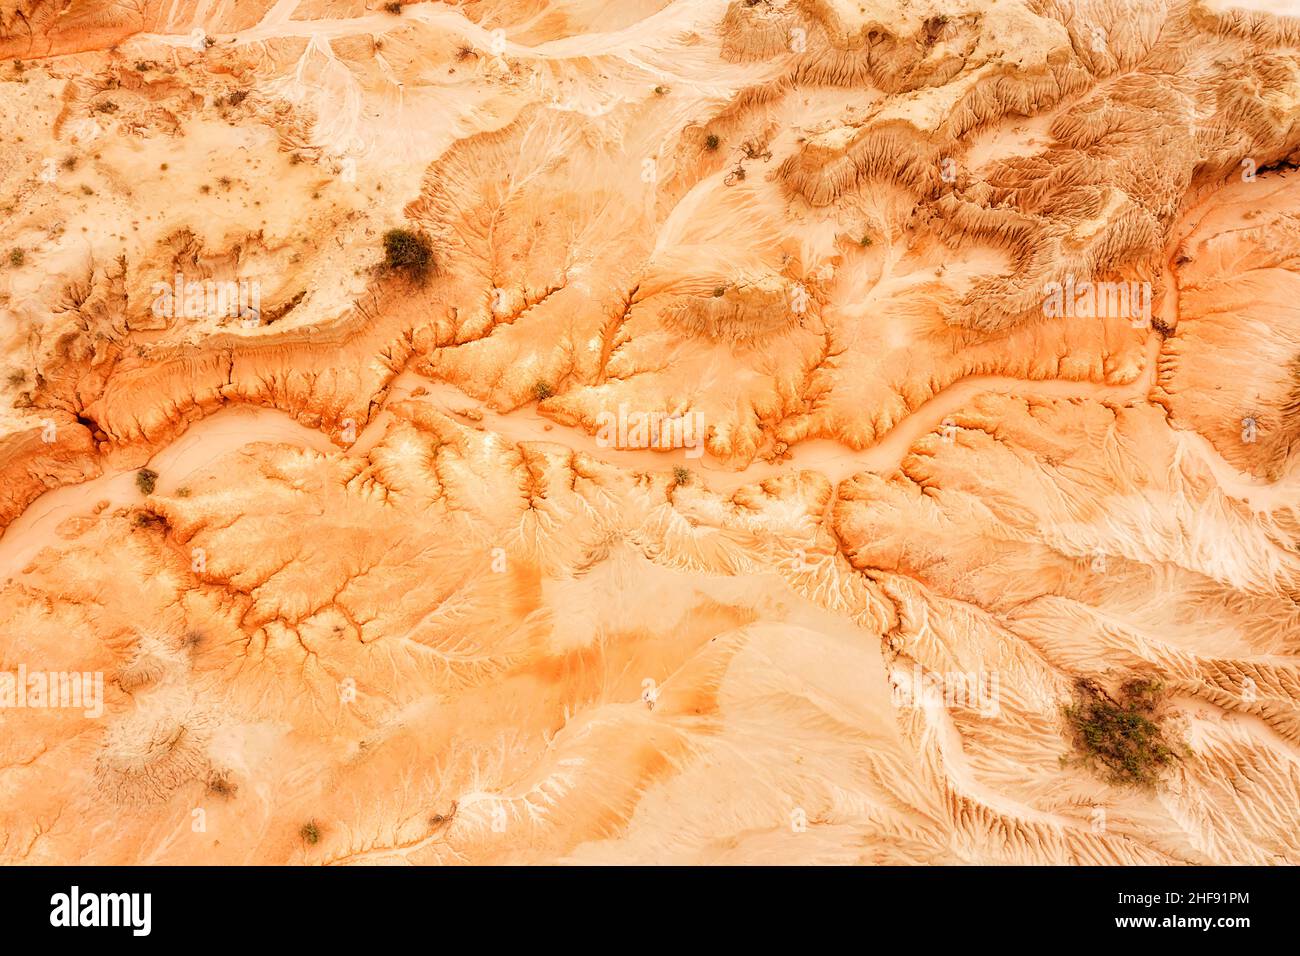 Erodiertes, trockenes Lake Mungo-Bett im australischen Outback-Nationalpark - Sandstein- und Tonbildung nach Wind- und Wassererosion in der Luft von oben nach unten. Stockfoto